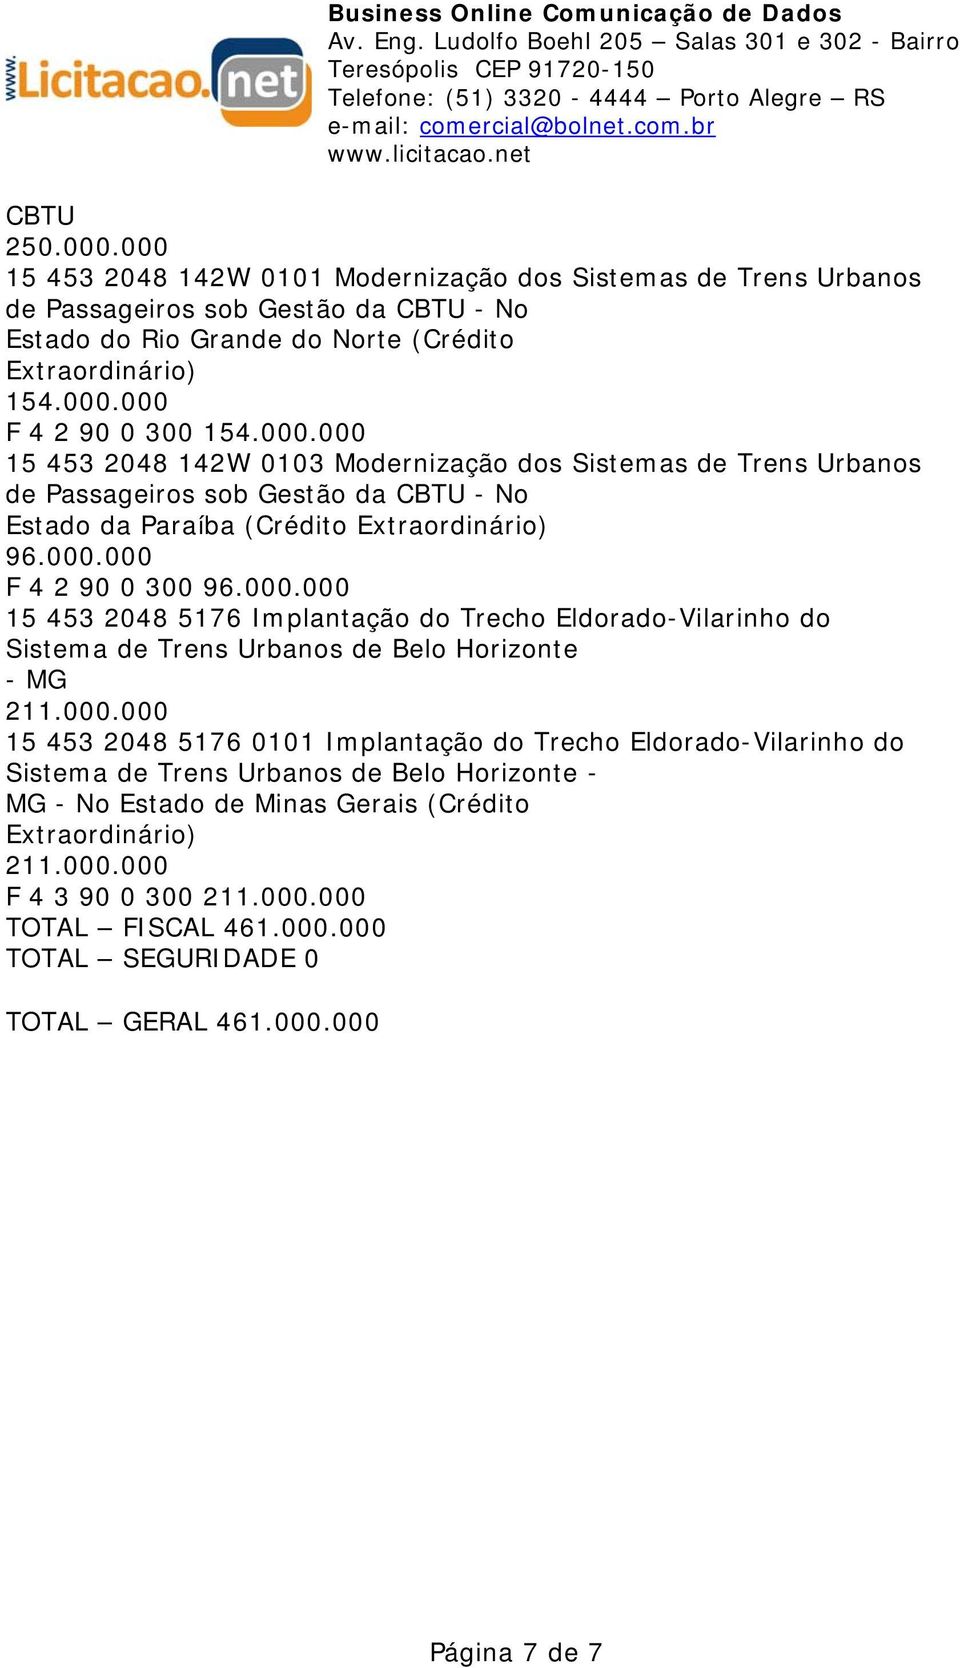 000.000 15 453 2048 5176 0101 Implantação do Trecho Eldorado-Vilarinho do Sistema de Trens Urbanos de Belo Horizonte - MG - No Estado de Minas Gerais (Crédito 211.000.000 F 4 3 90 0 300 211.